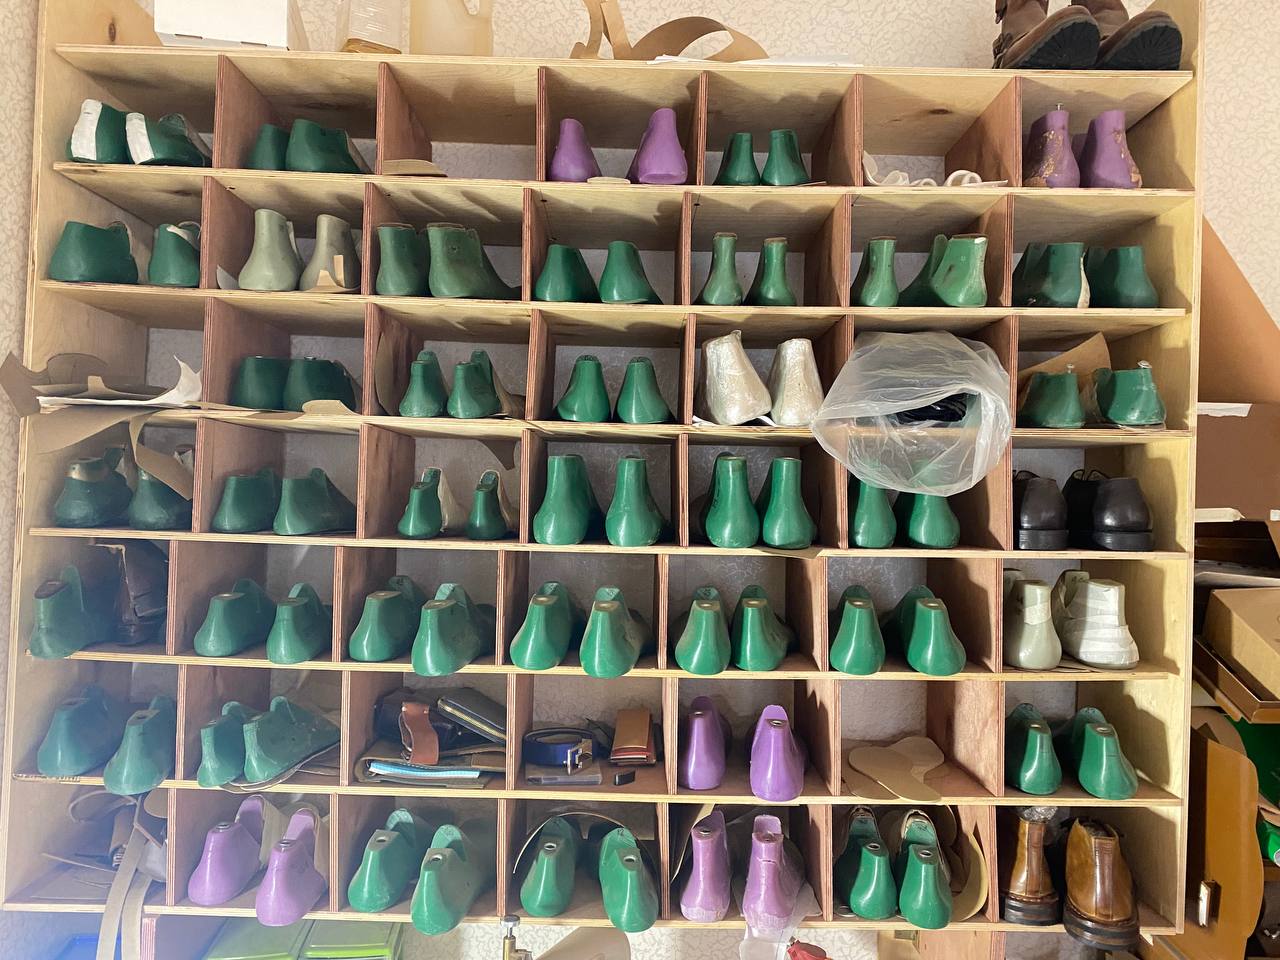 Мастер по изготовлению обуви в Тюмени Сергей Галимов рассказал, что его дело началось с ролика в интернете